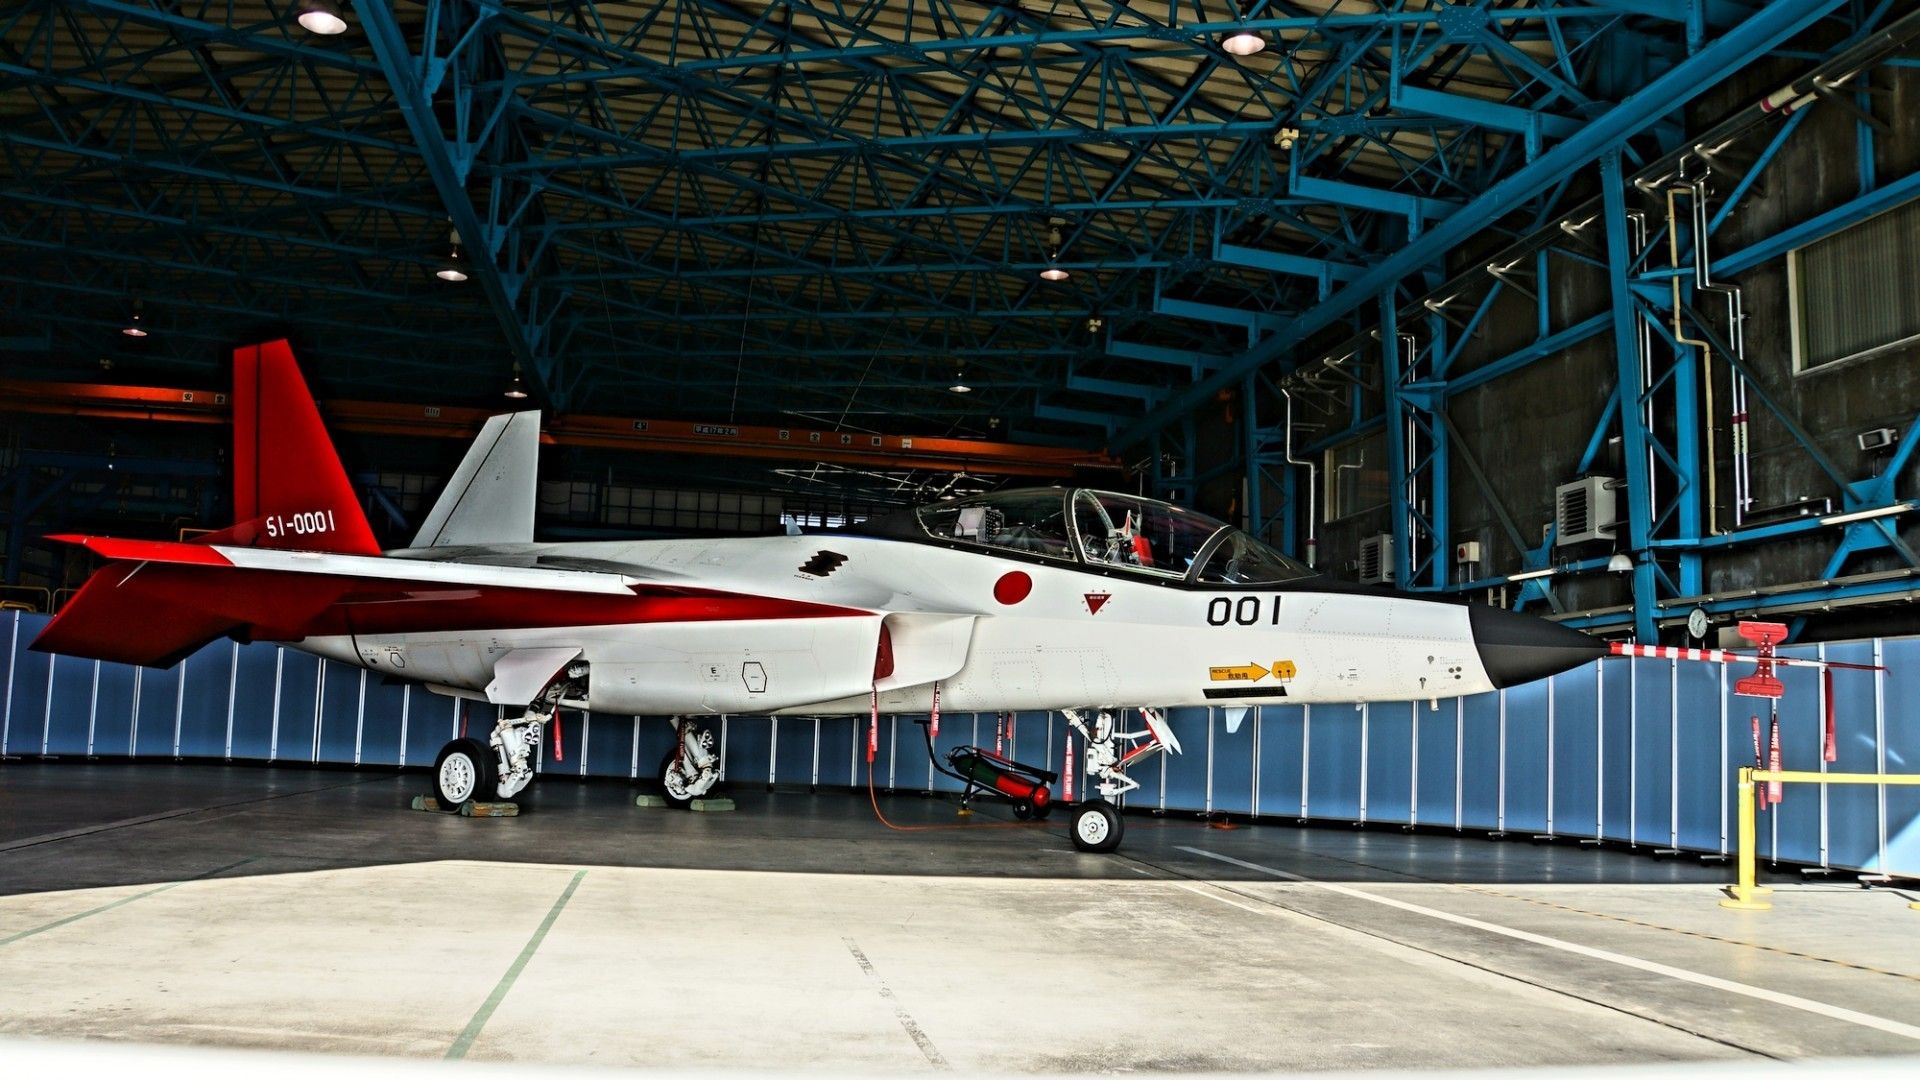 Myśliwiec F-3 ma wykorzystywać doświadczenie zdobyte przy budowie demonstratora technologii Mitsubishi X-2. Fot. Hunini/CC BY-SA 4.0